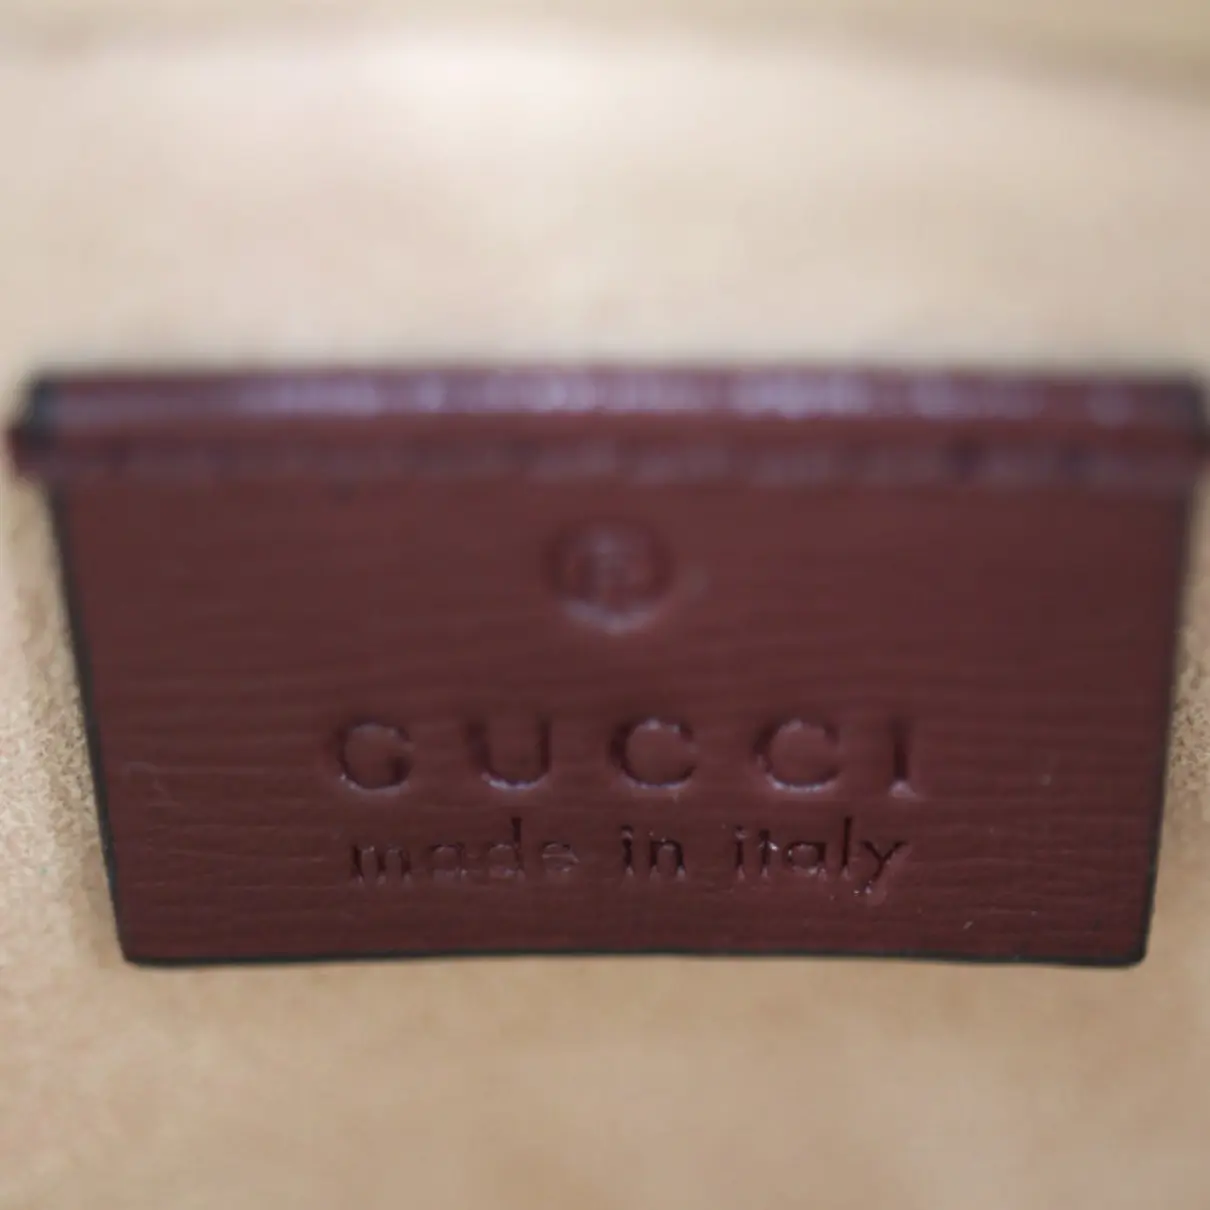 Interlocking cloth clutch bag Gucci